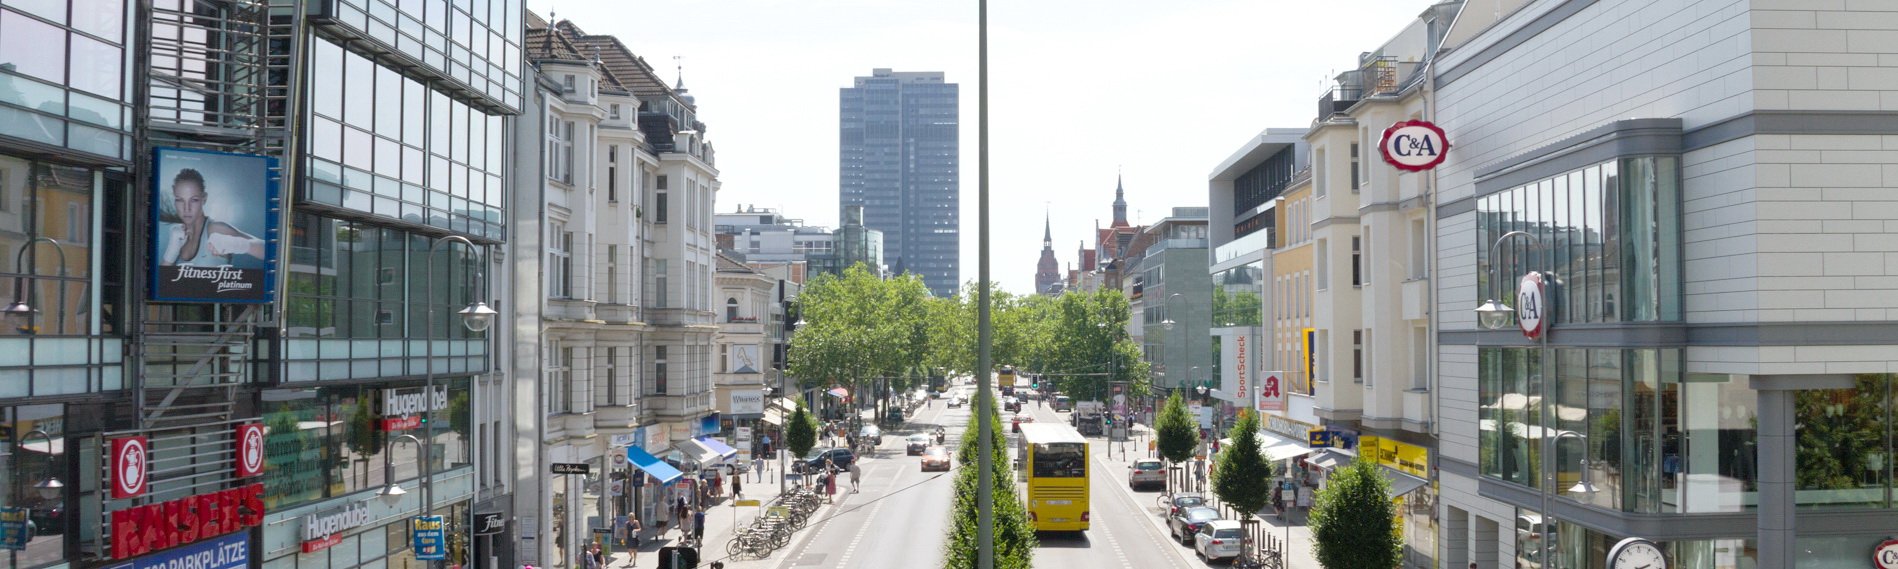 Berlin i detalj – Berlin-Steglitz i korthet